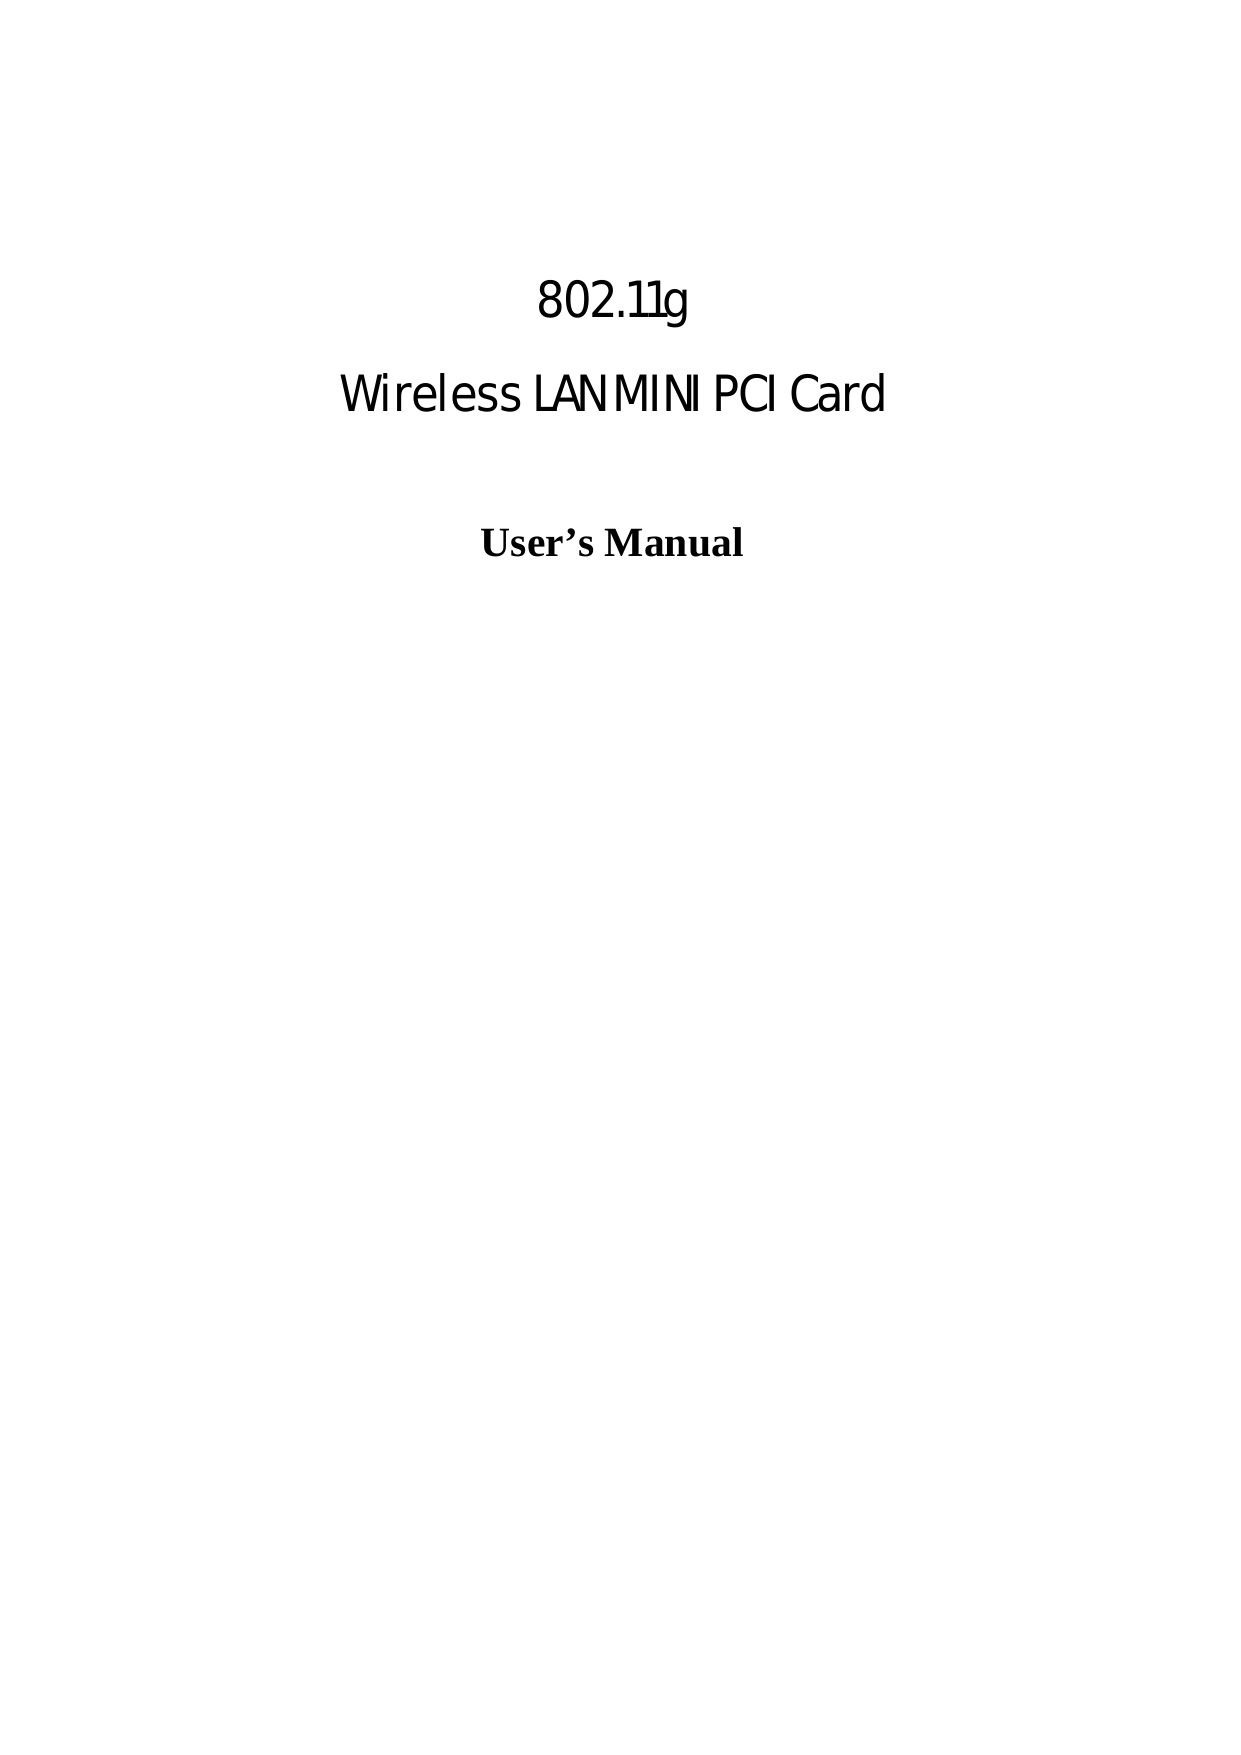     802.11g  Wireless LAN MINI PCI Card  User’s Manual 